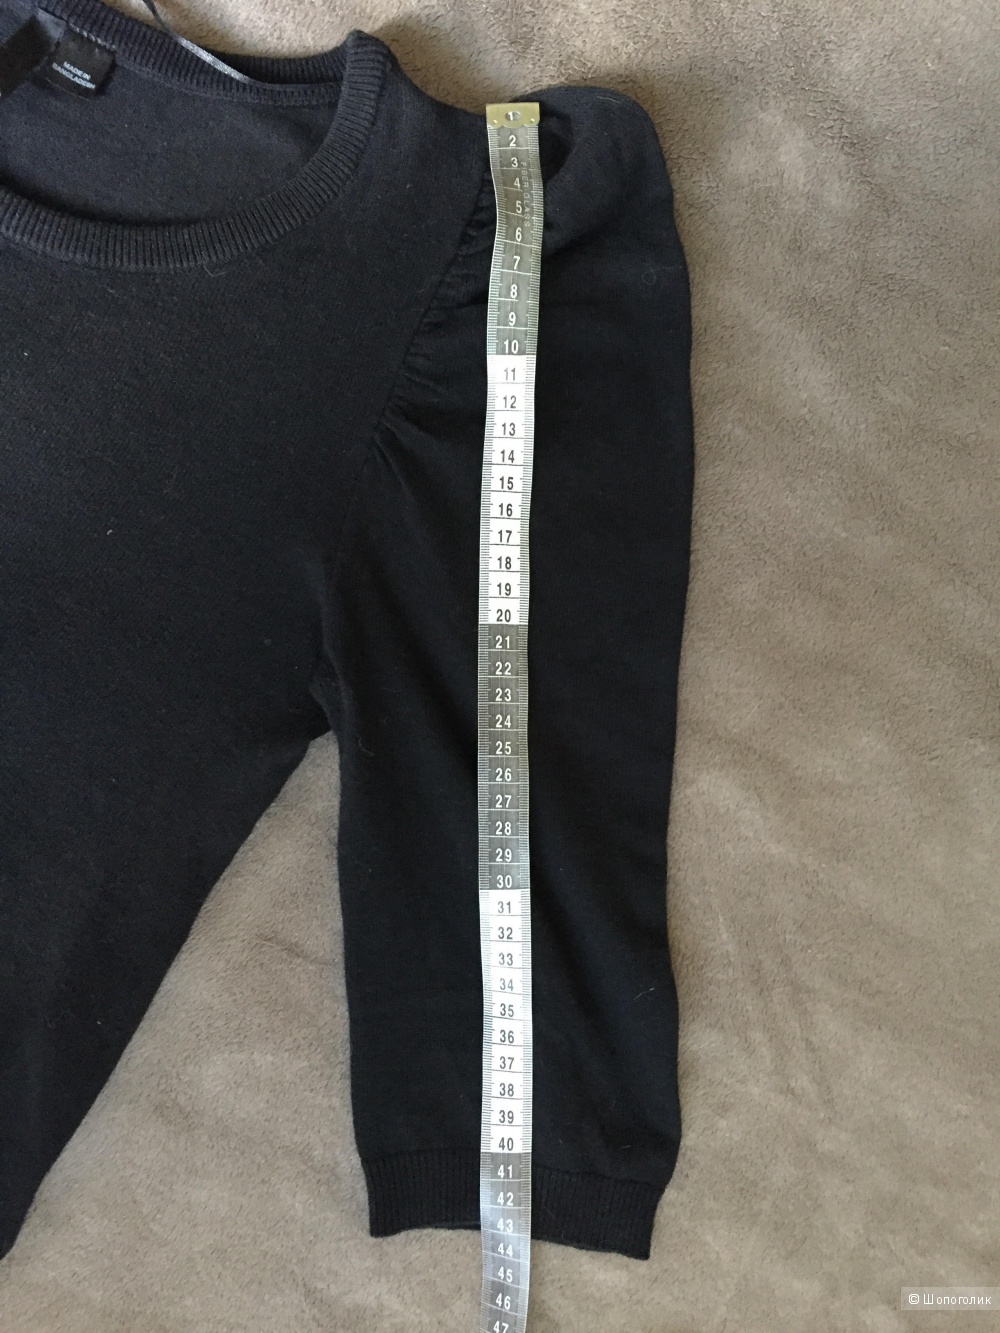 Черный свитер французской марки Camaieu на размер М. Можно на S.